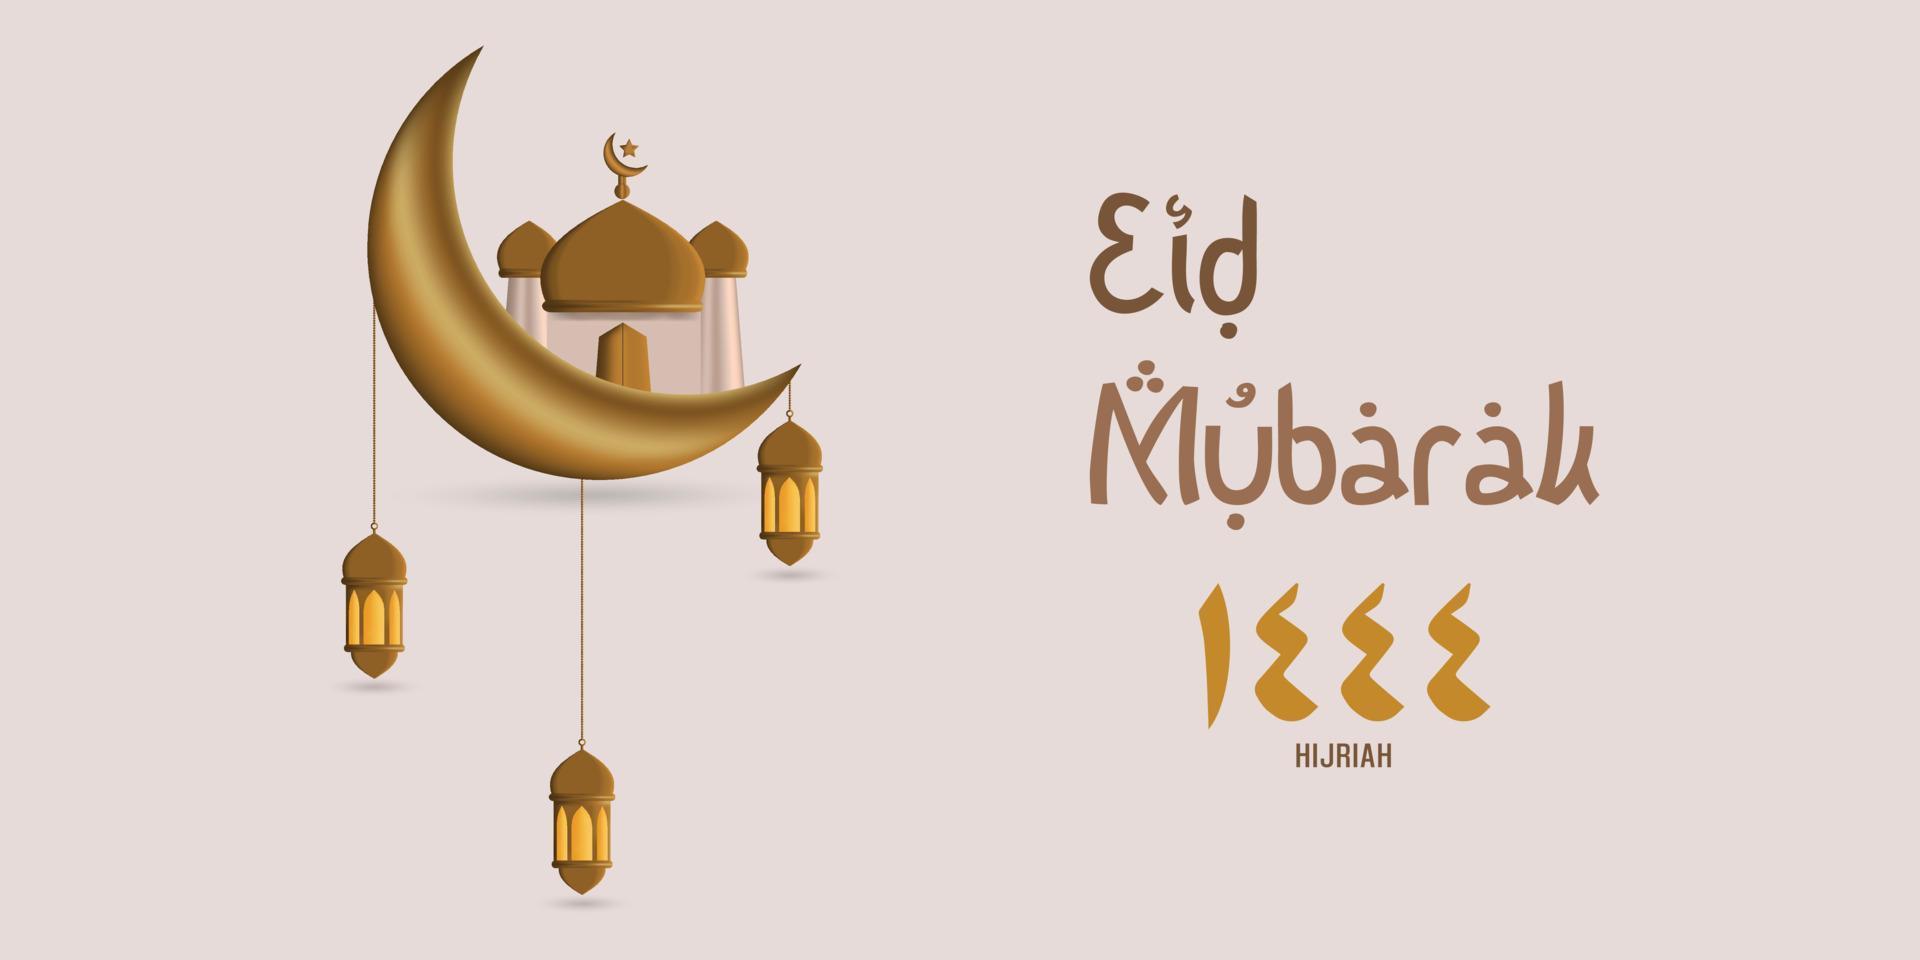 eid mubarak 1444 hijriah. eid al-fitr salutation carte conception avec croissant lune, mosquée et islamique lanterne ornements vecteur